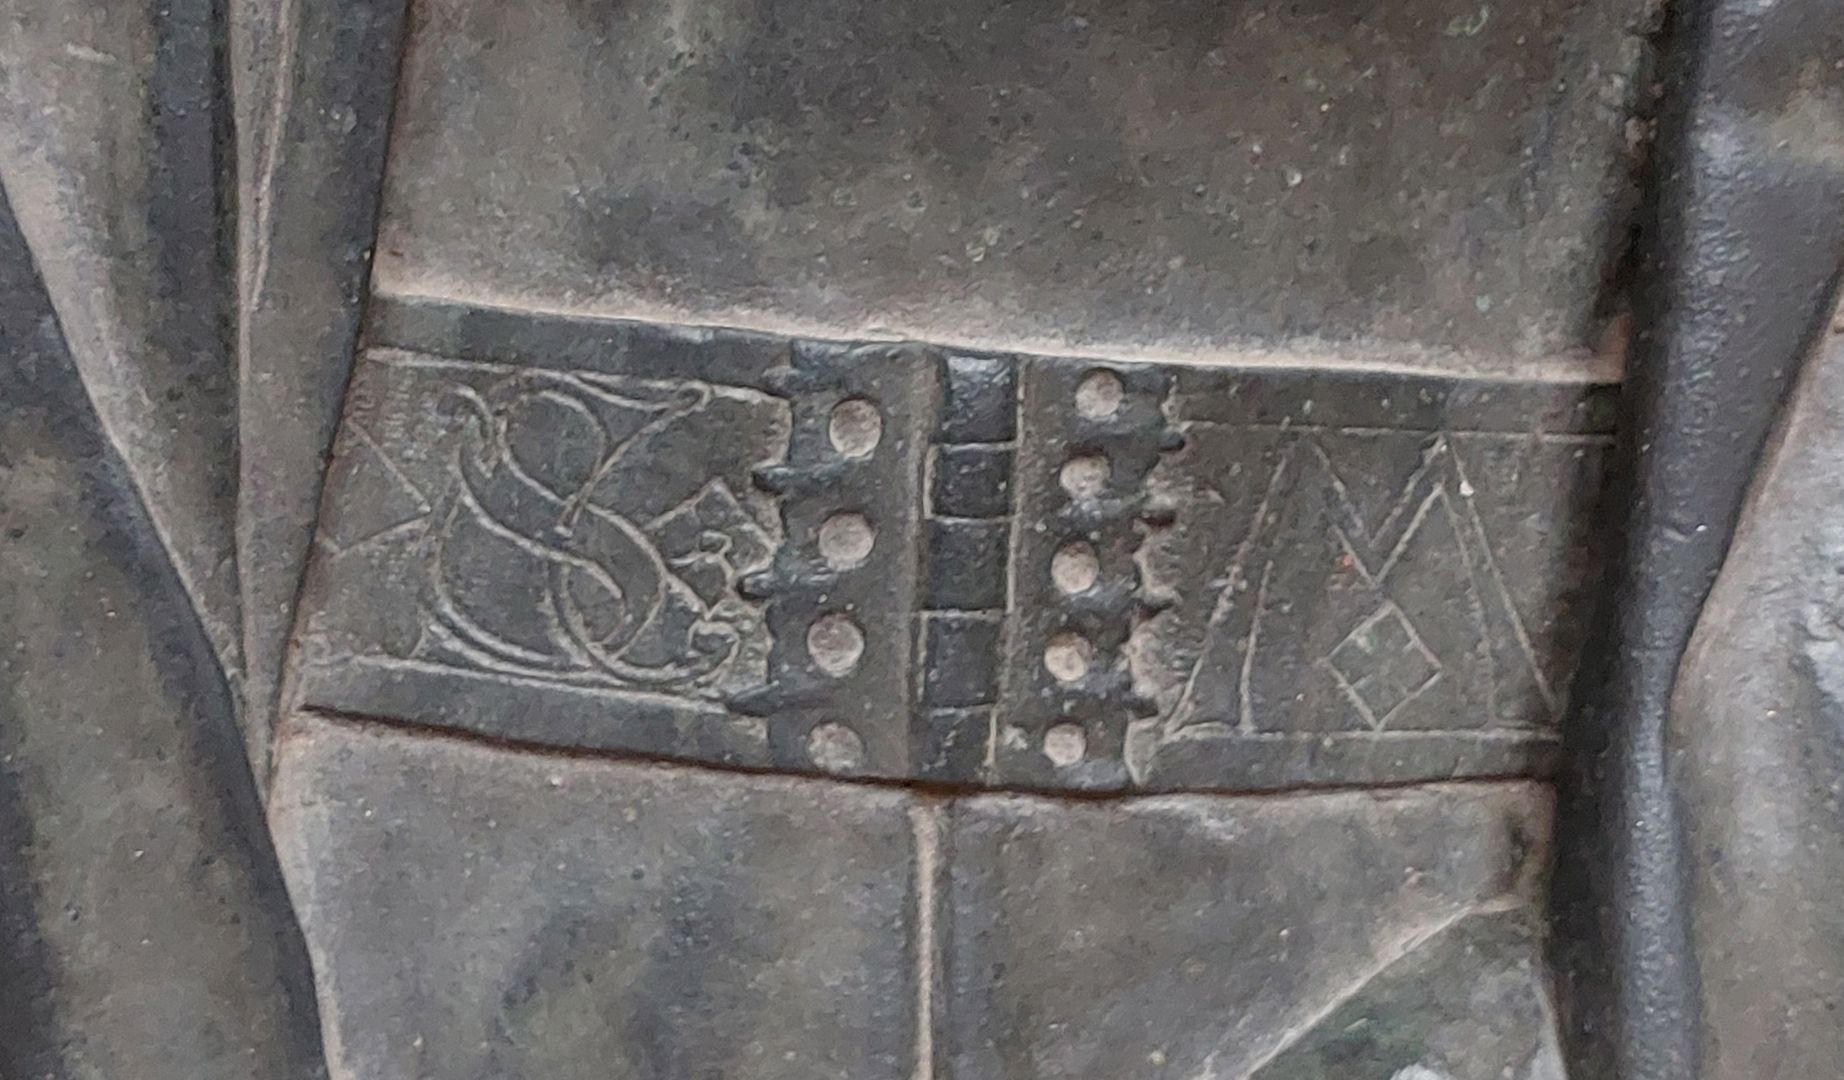 Grabplatte der Herzogin Sophia von Mecklenburg, Prinzessin von Pommern Detail der Gürtelschließe und die Initialen S und M